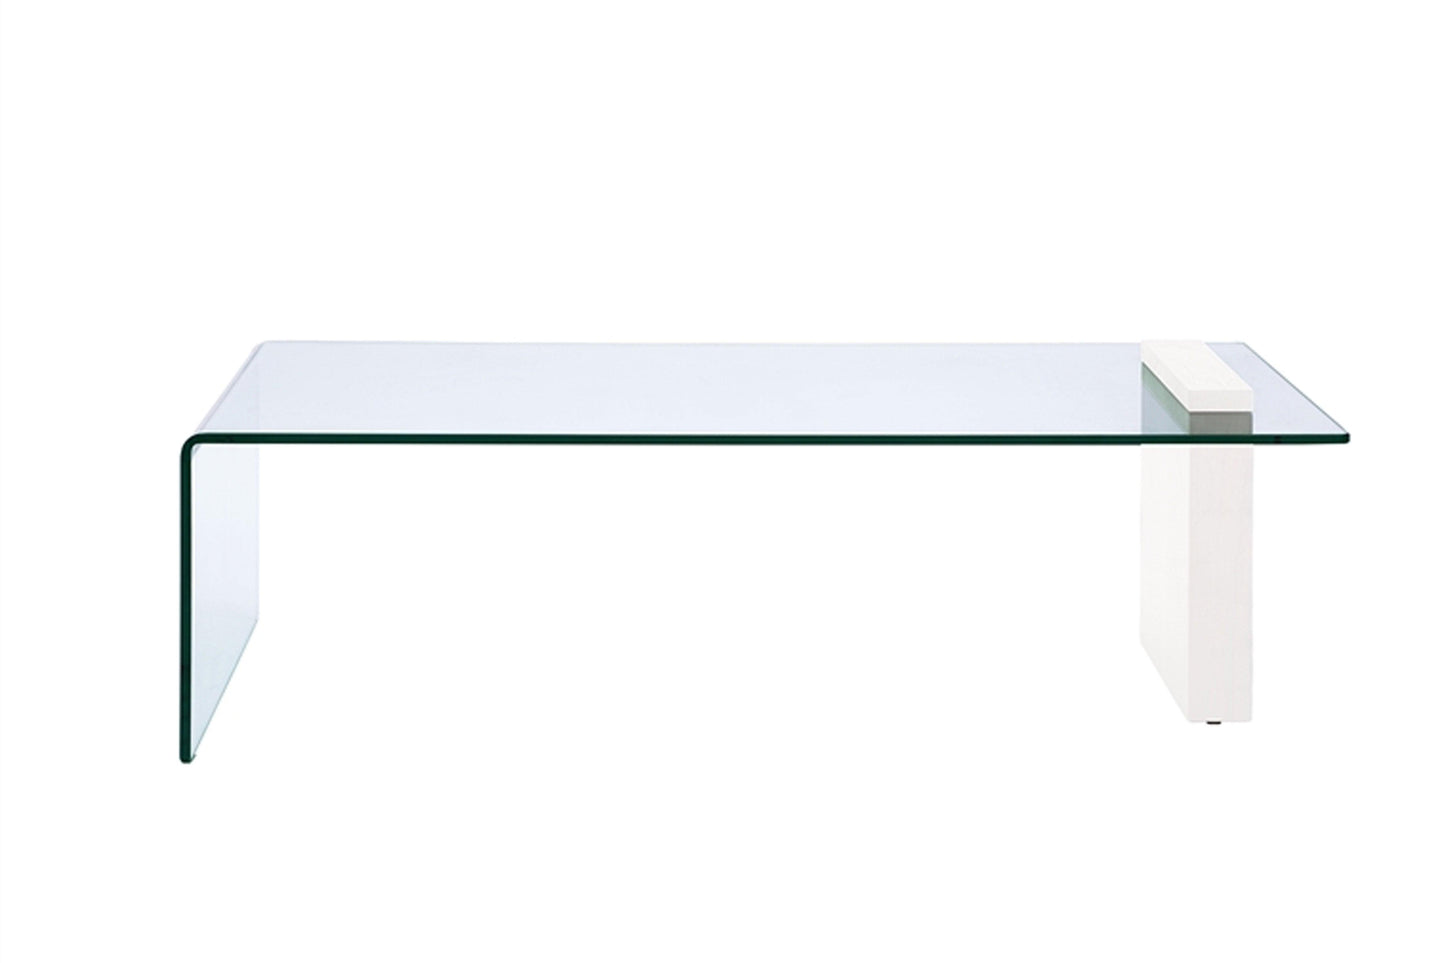 Buono Coffee Table White Model CB-1154-COFFEE-WH - Venini Furniture 